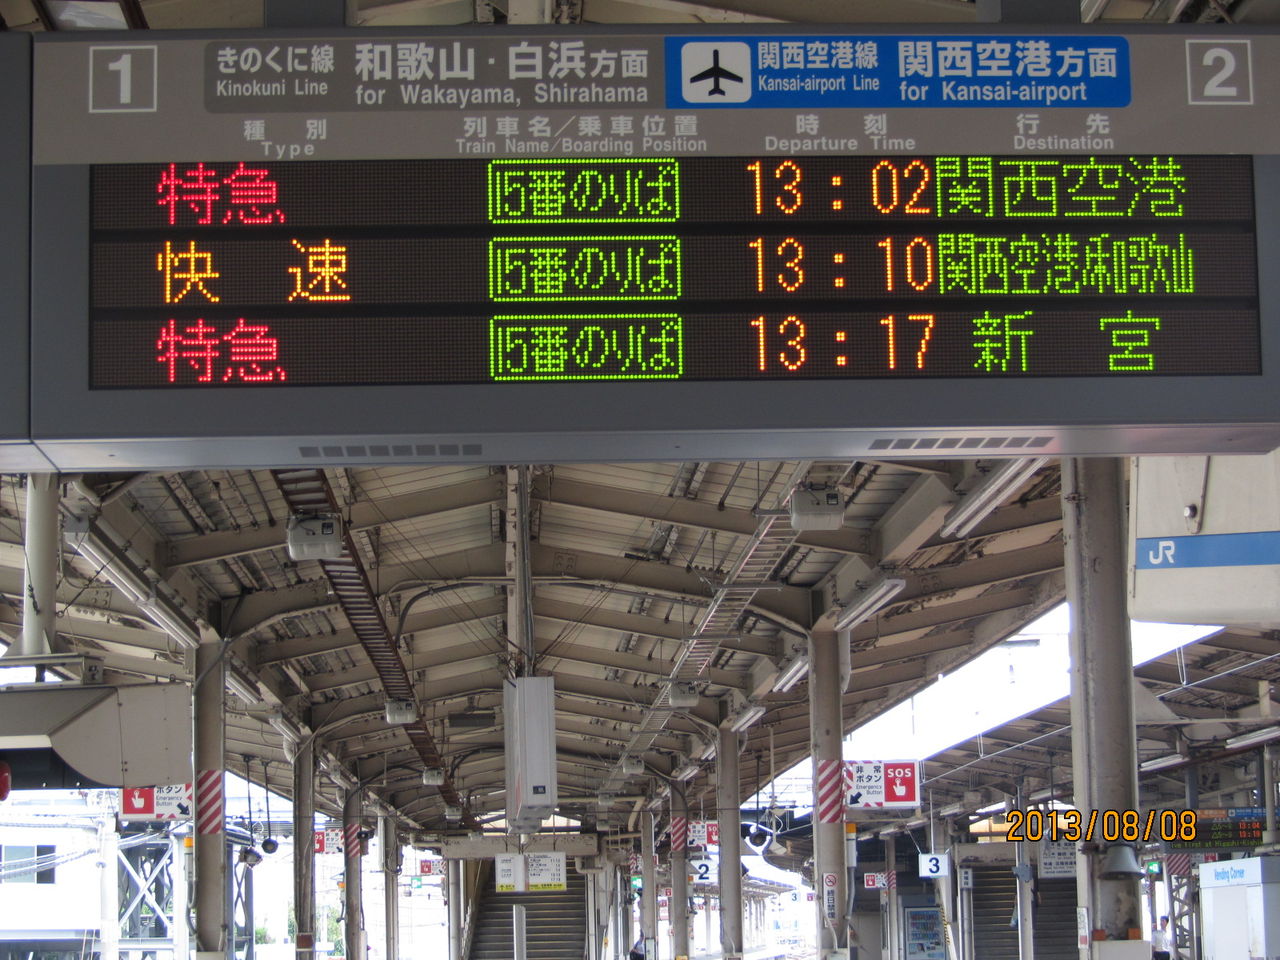 天王寺駅 阪和線ホームの電光掲示板 発車標 更新後 表示の新旧比較 関西のjrへようこそ